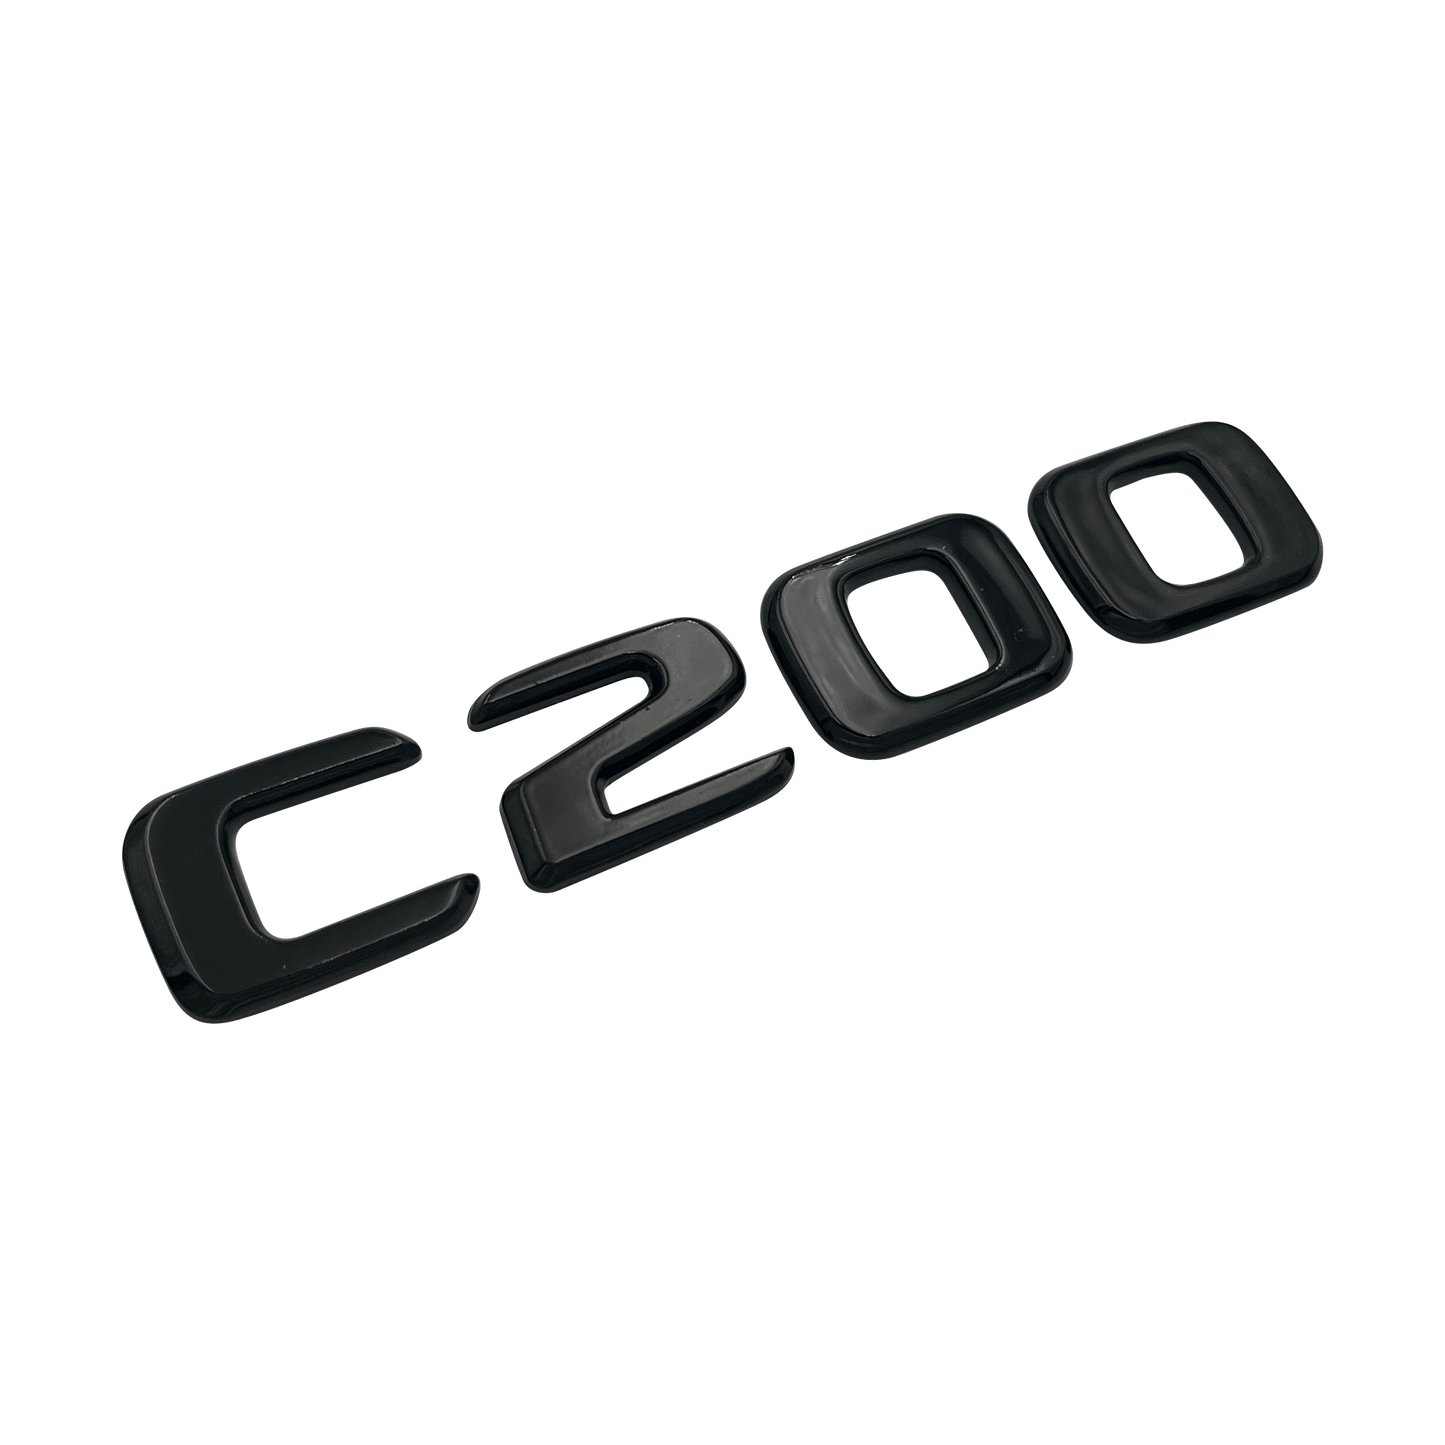 Sort Mercedes C200 Emblem Badge